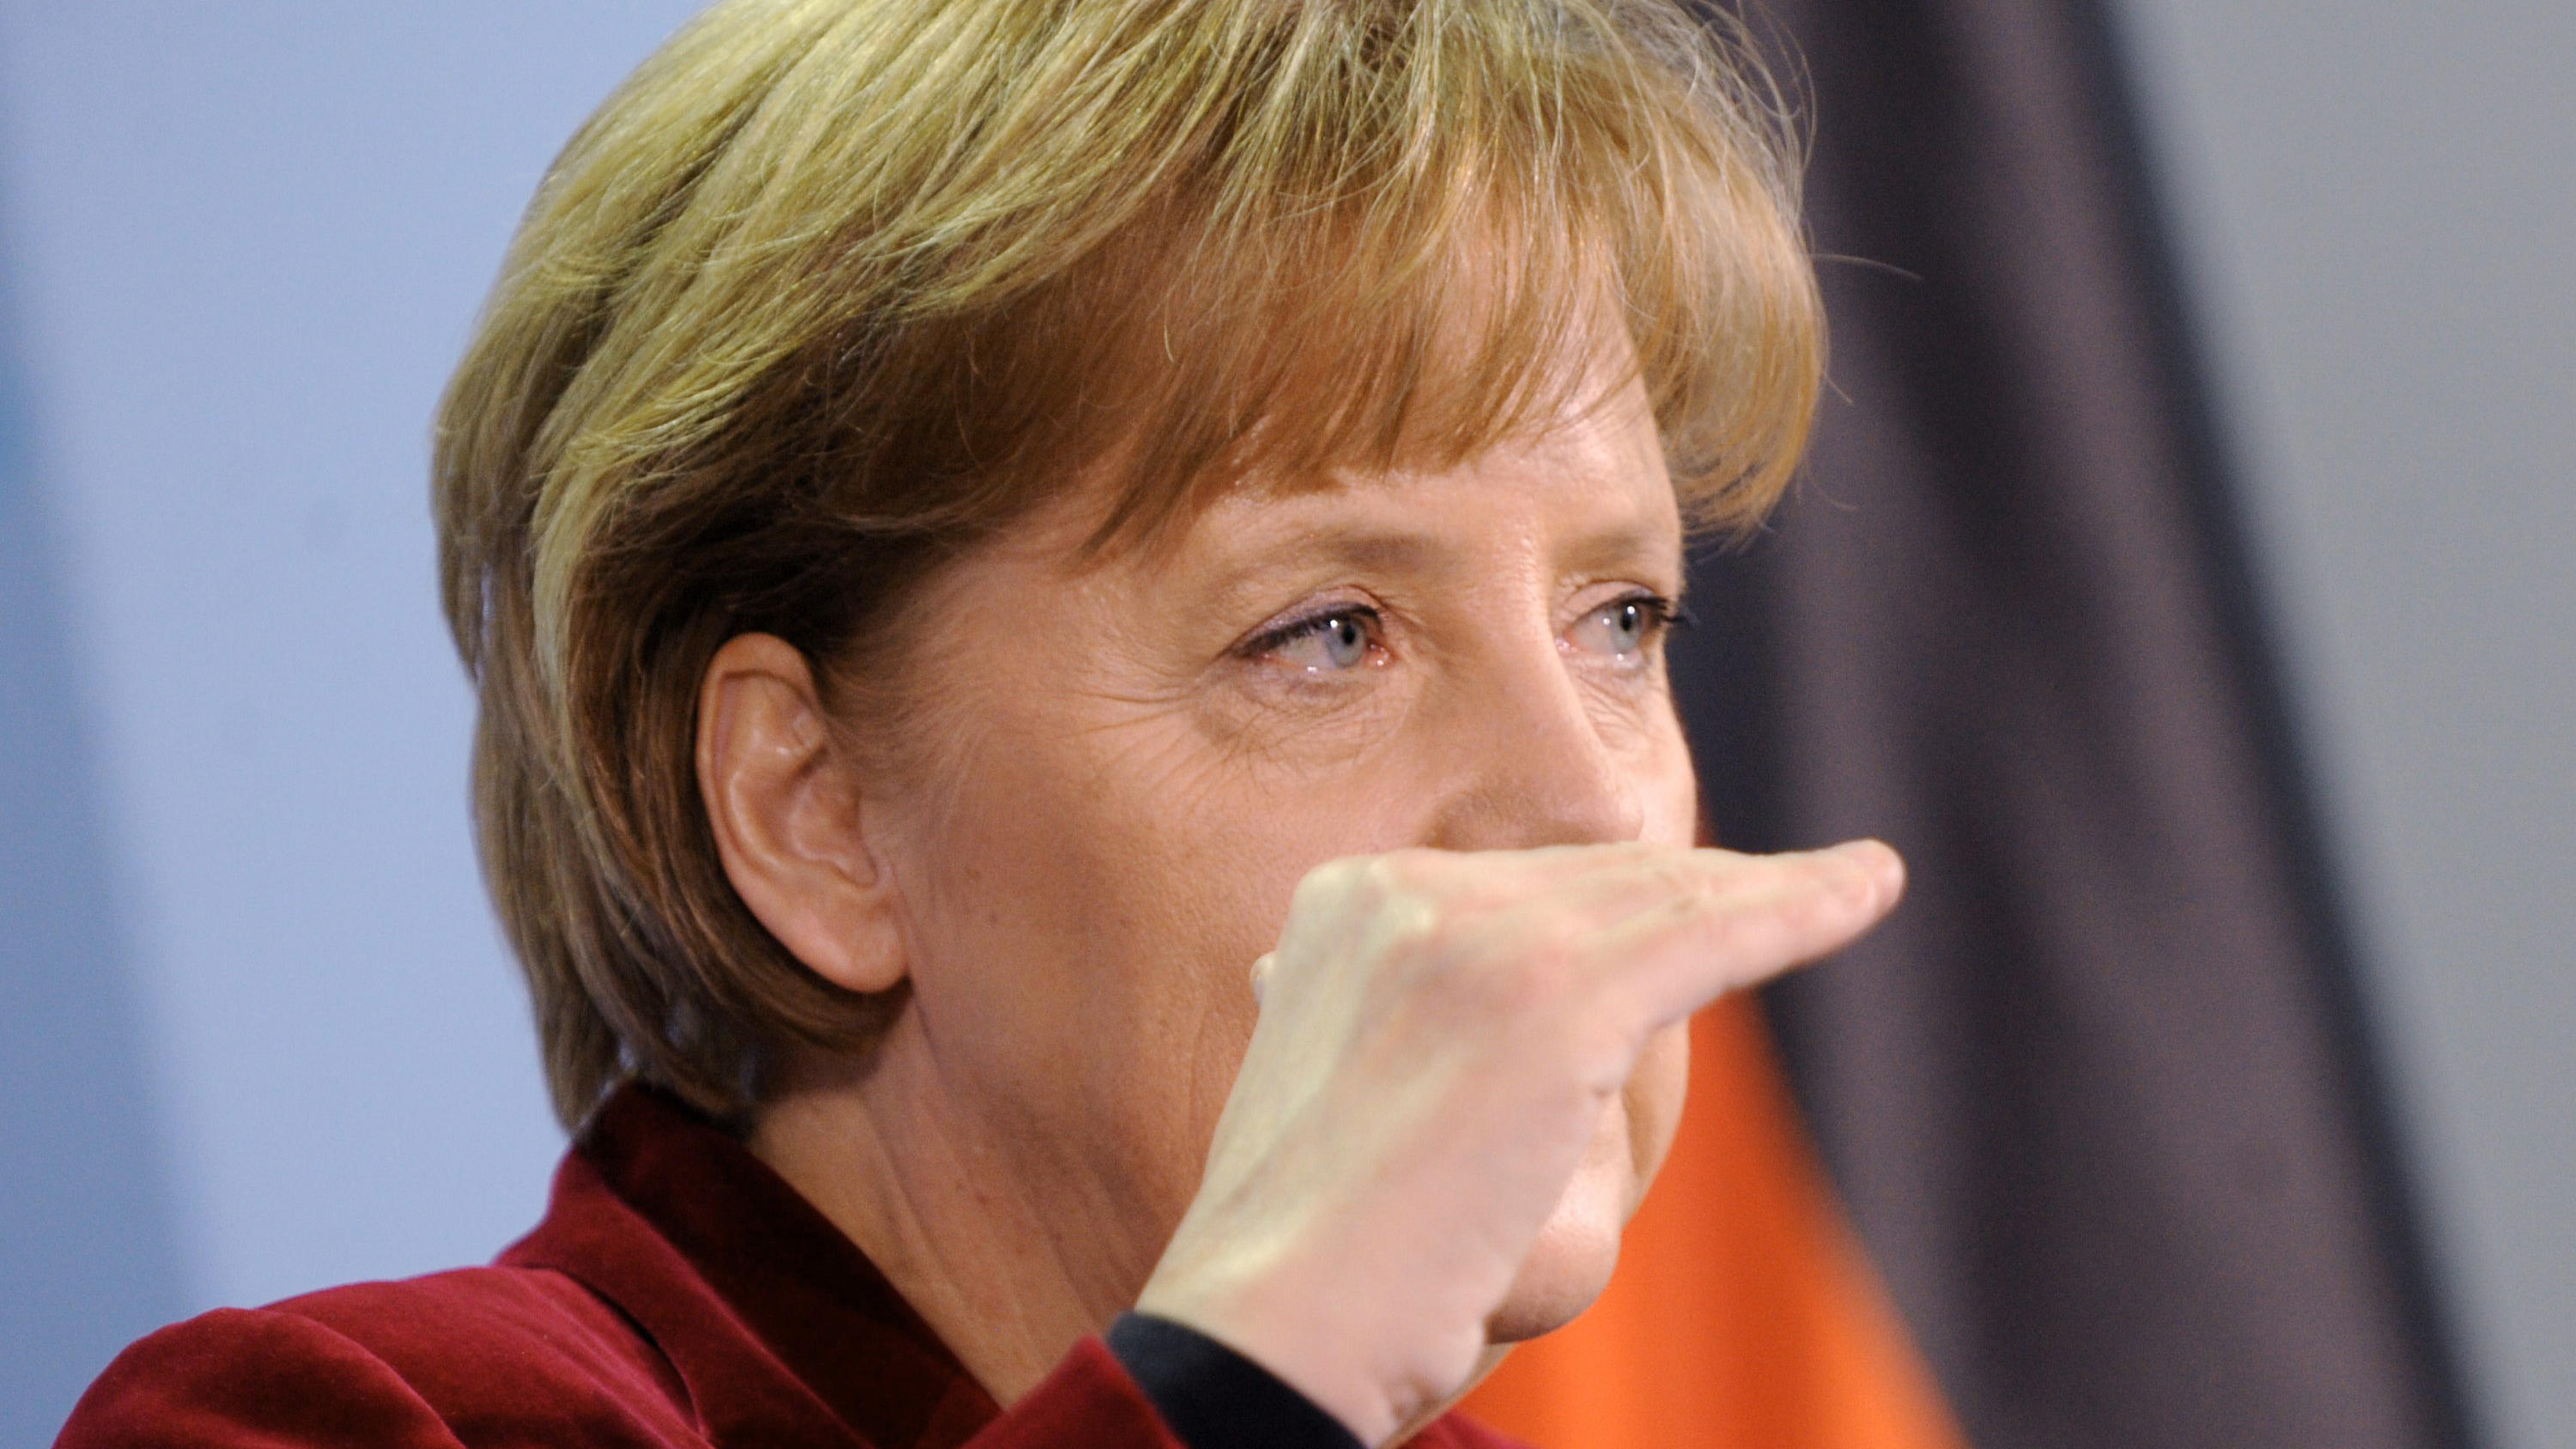 ARCHIV - 14.03.2011, Berlin: Bundeskanzlerin Angela Merkel (CDU) gibt im Kanzleramt bekannt, dass die Verlängerung der Laufzeiten für die Atomkraftwerke ausgesetzt wird. Als Folge der Atomkraft-Katastrophe in Japan will die Bundesregierung die verlän